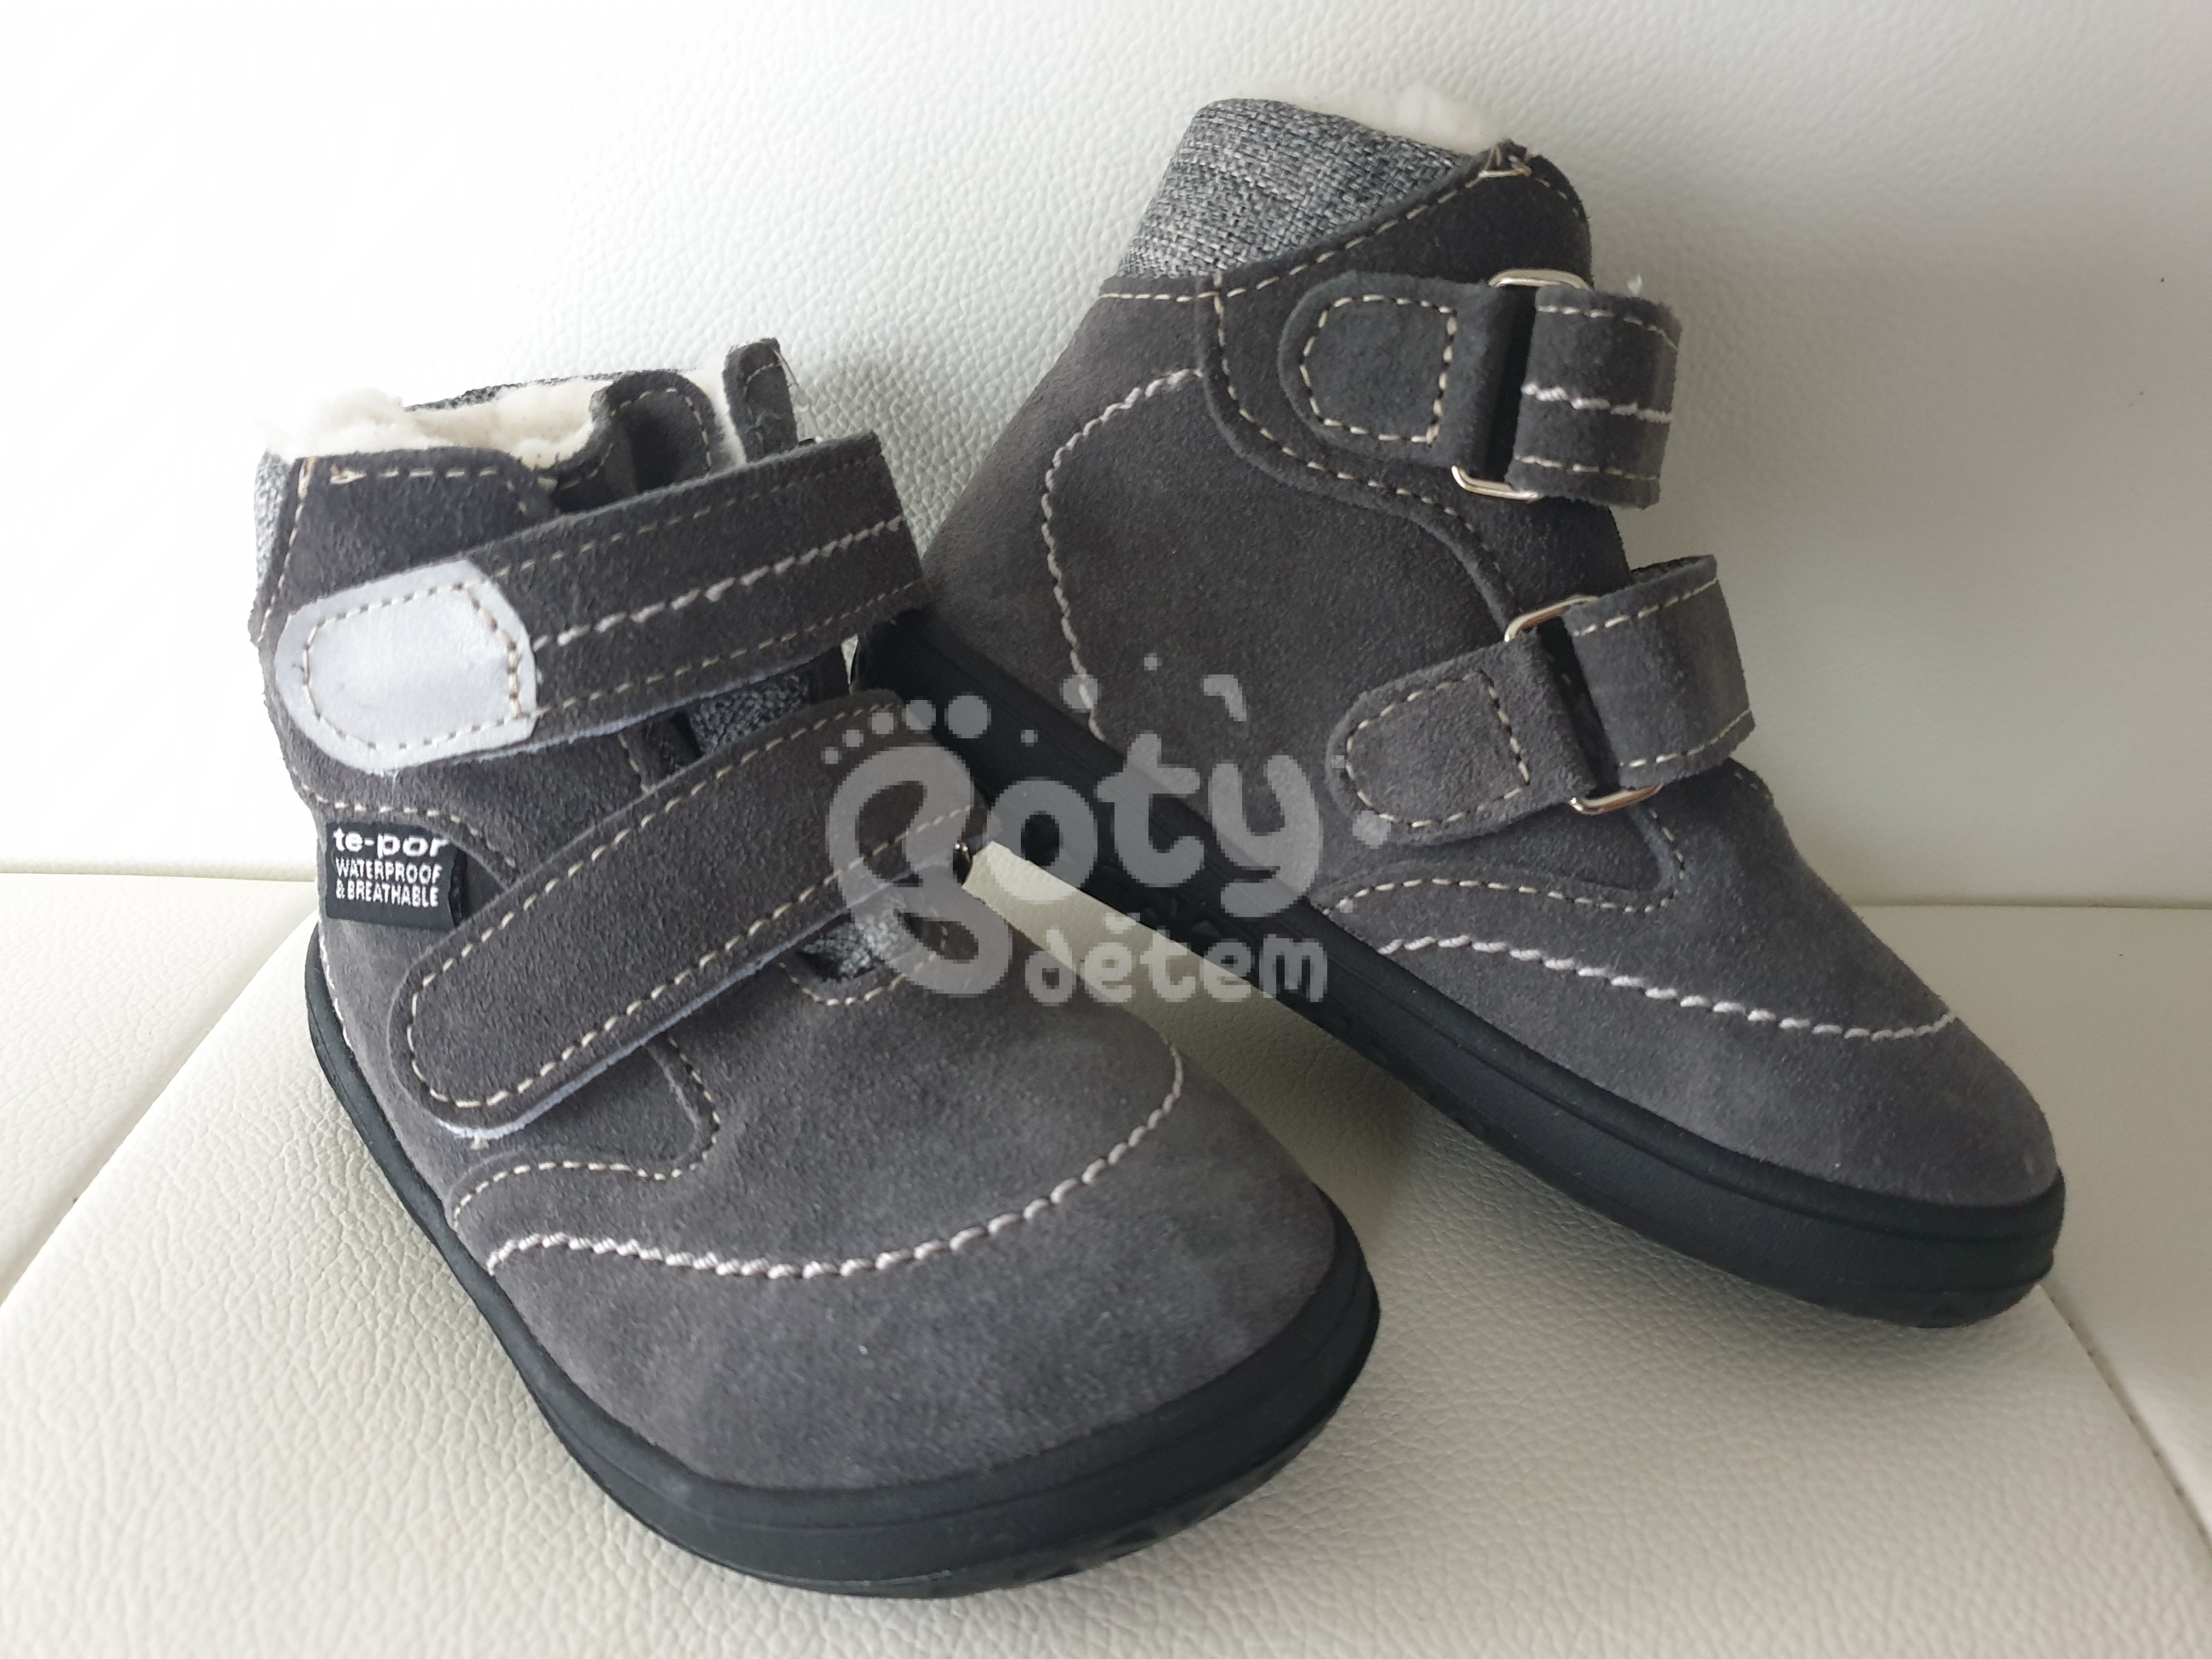 Jonap zimní kožené barefoot boty s membránou B5 SV šedá